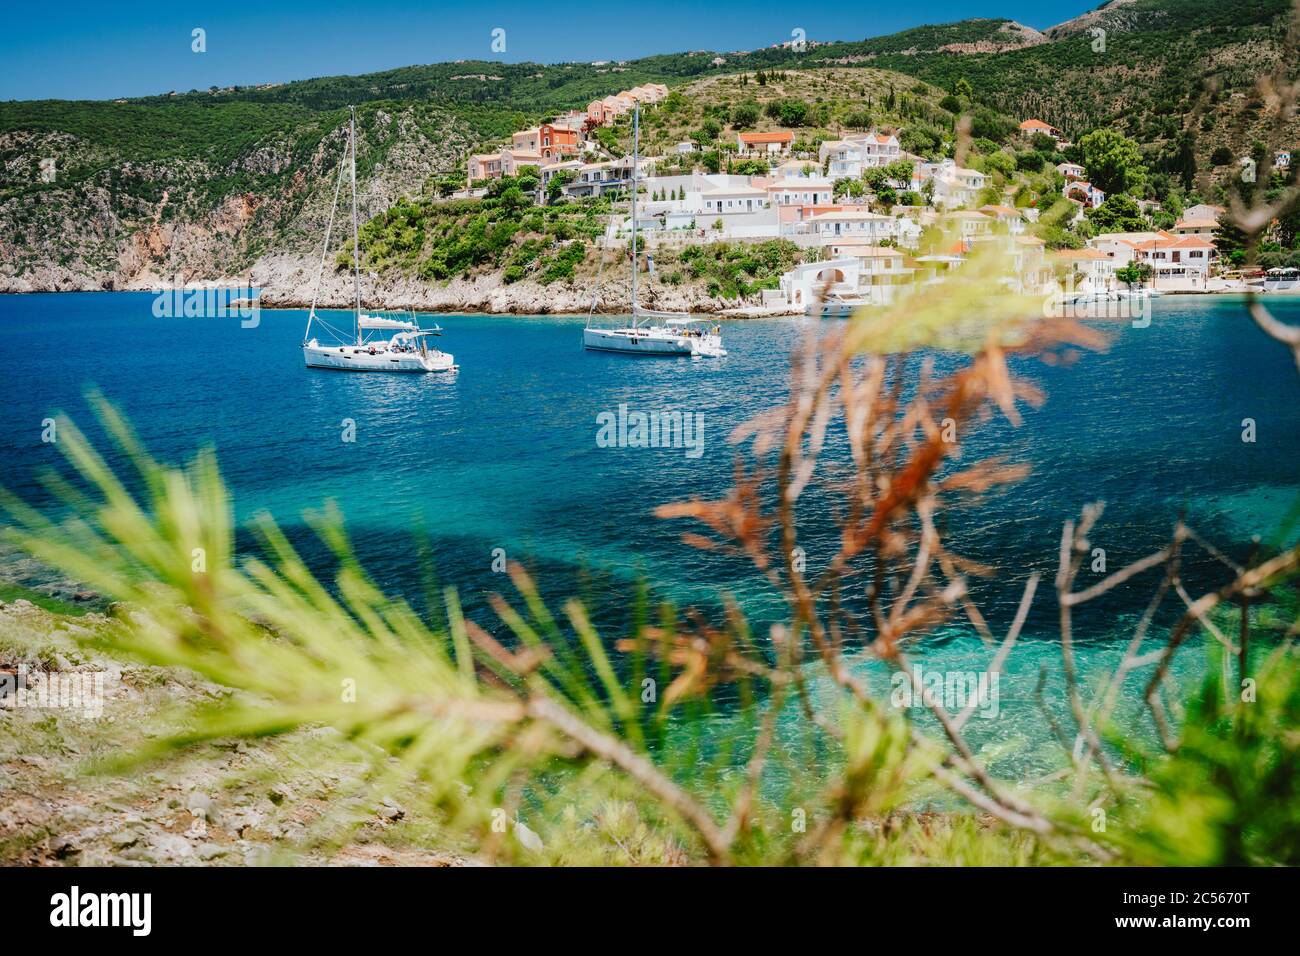 Gemütliche, farbenfrohe Stadt Assos. Mittelmeer- und Segelboote. Kefalonia Island, Griechenland. Stockfoto